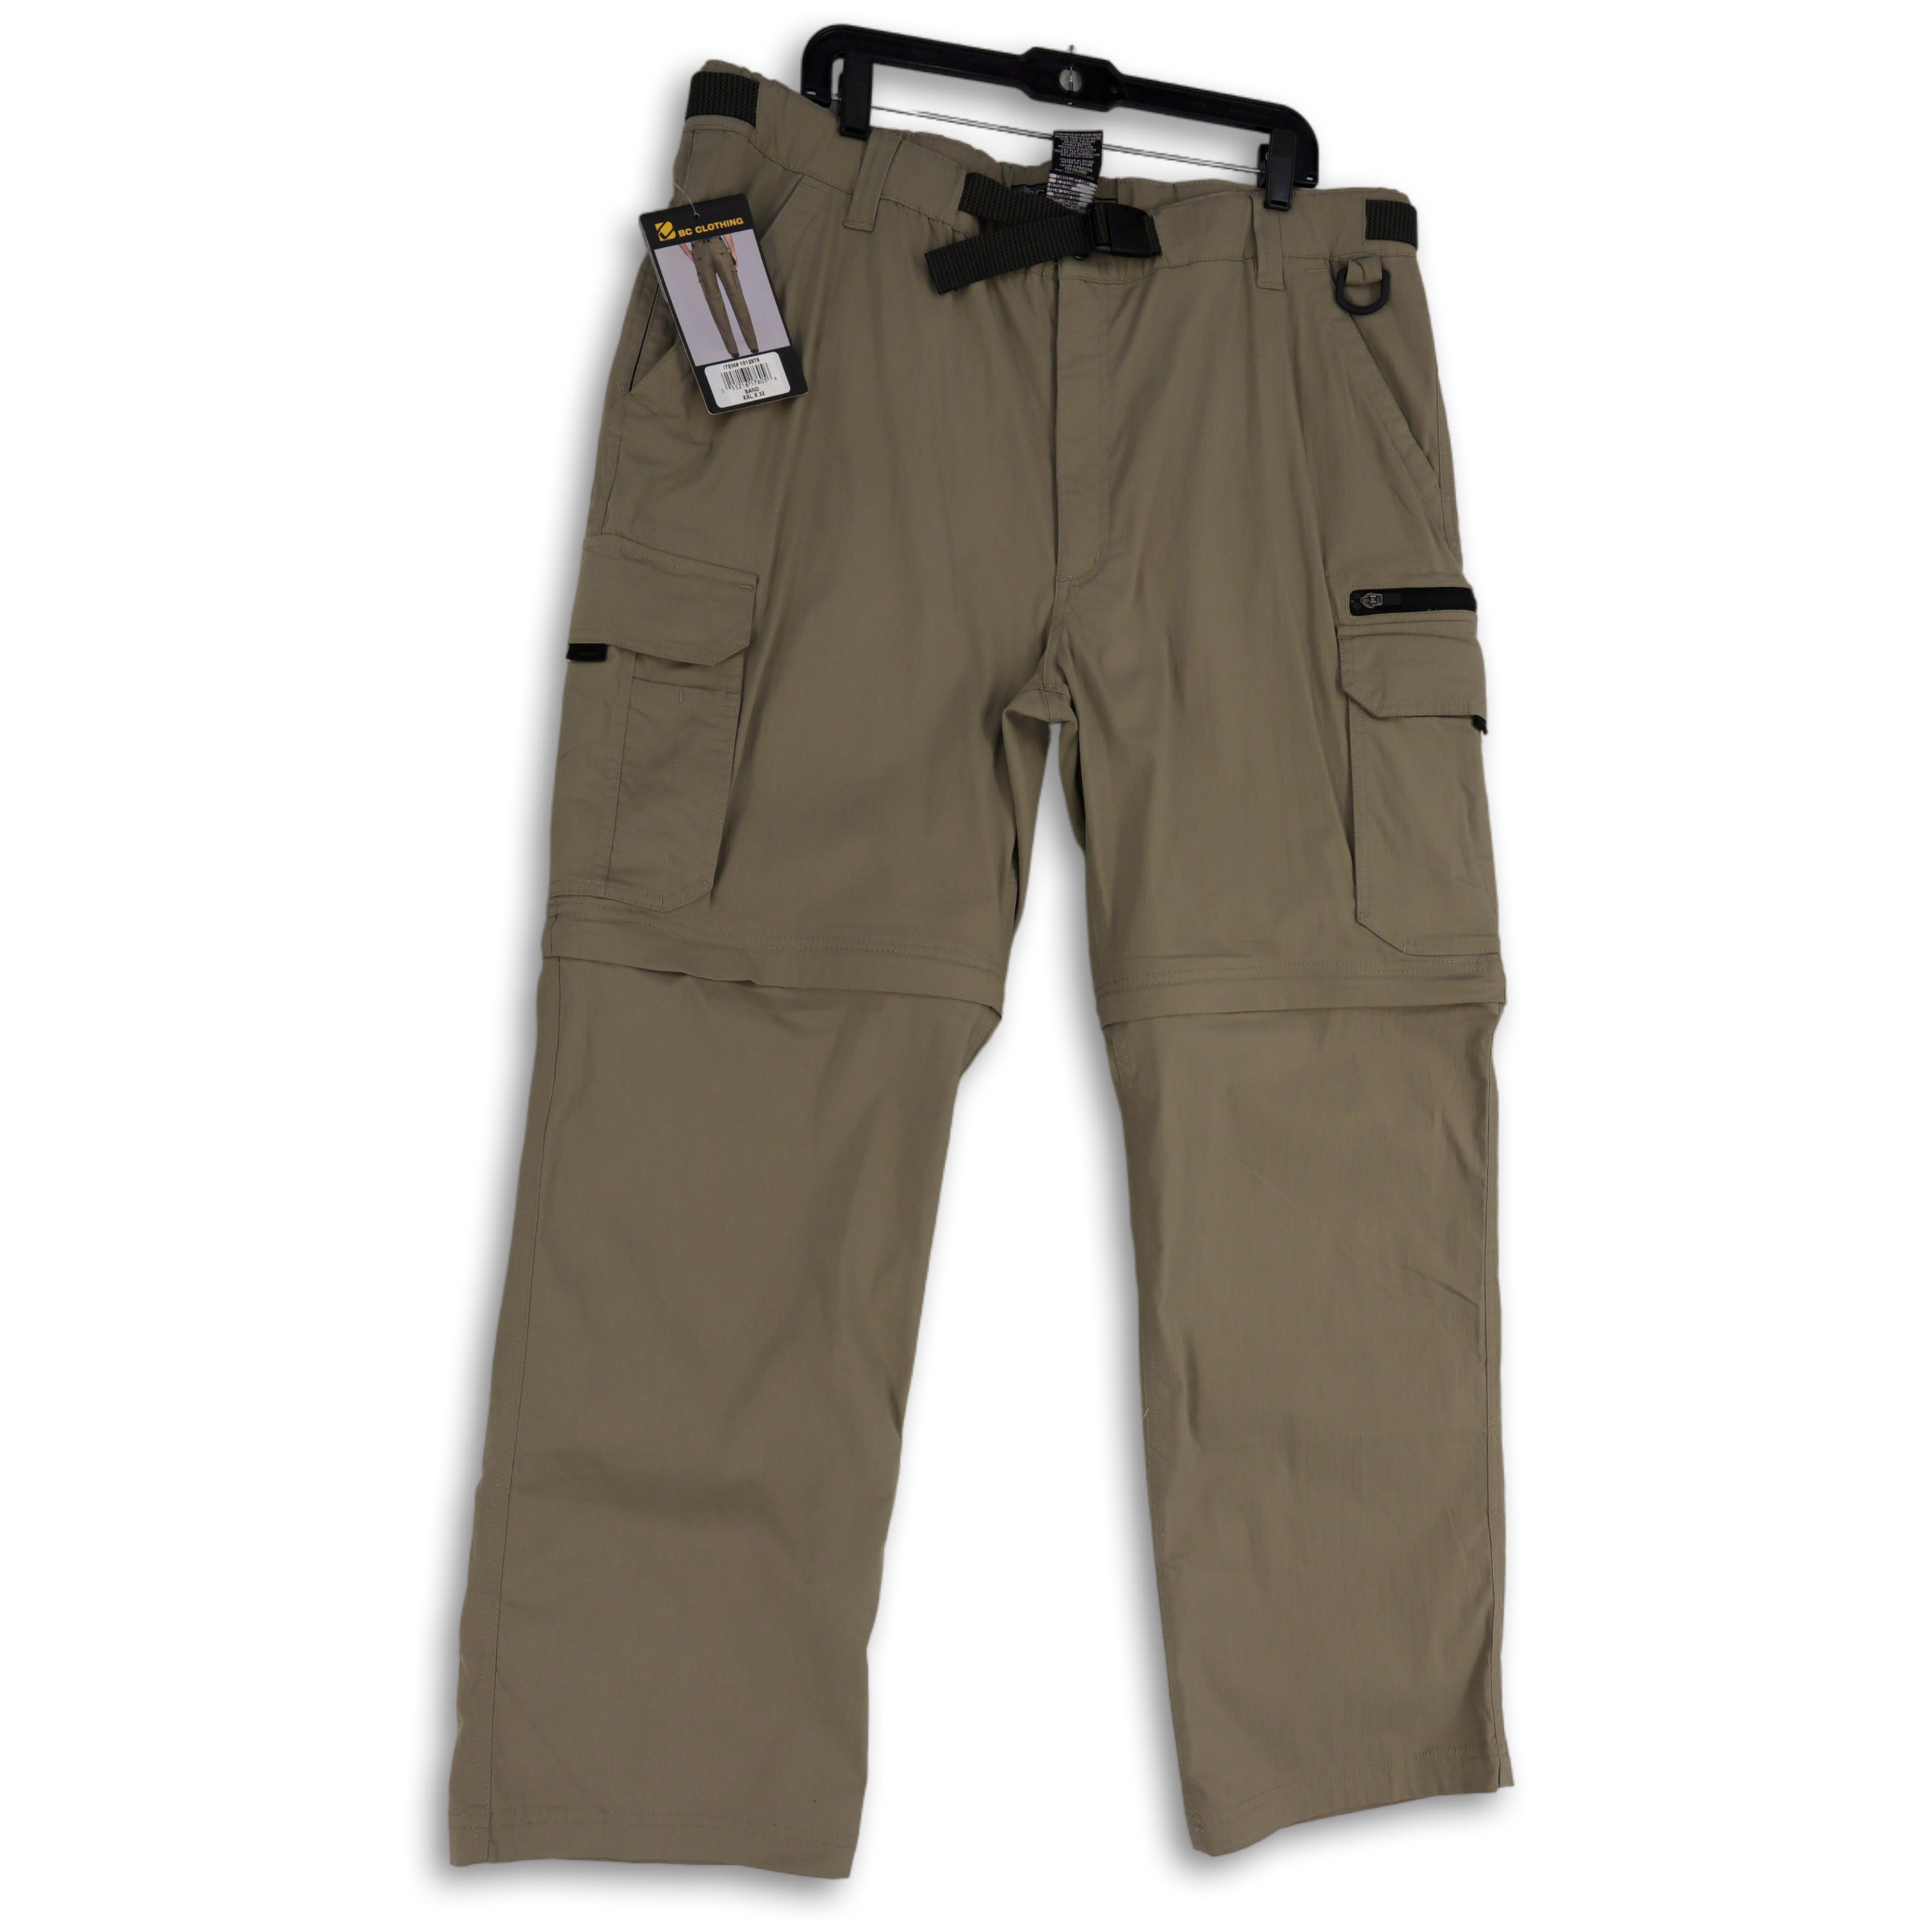 BC Clothing | Pants | Bc Clothing Convertible Cargo Pants Mens Xxl 34  Inseam Charcoal Gray Shorts | Poshmark